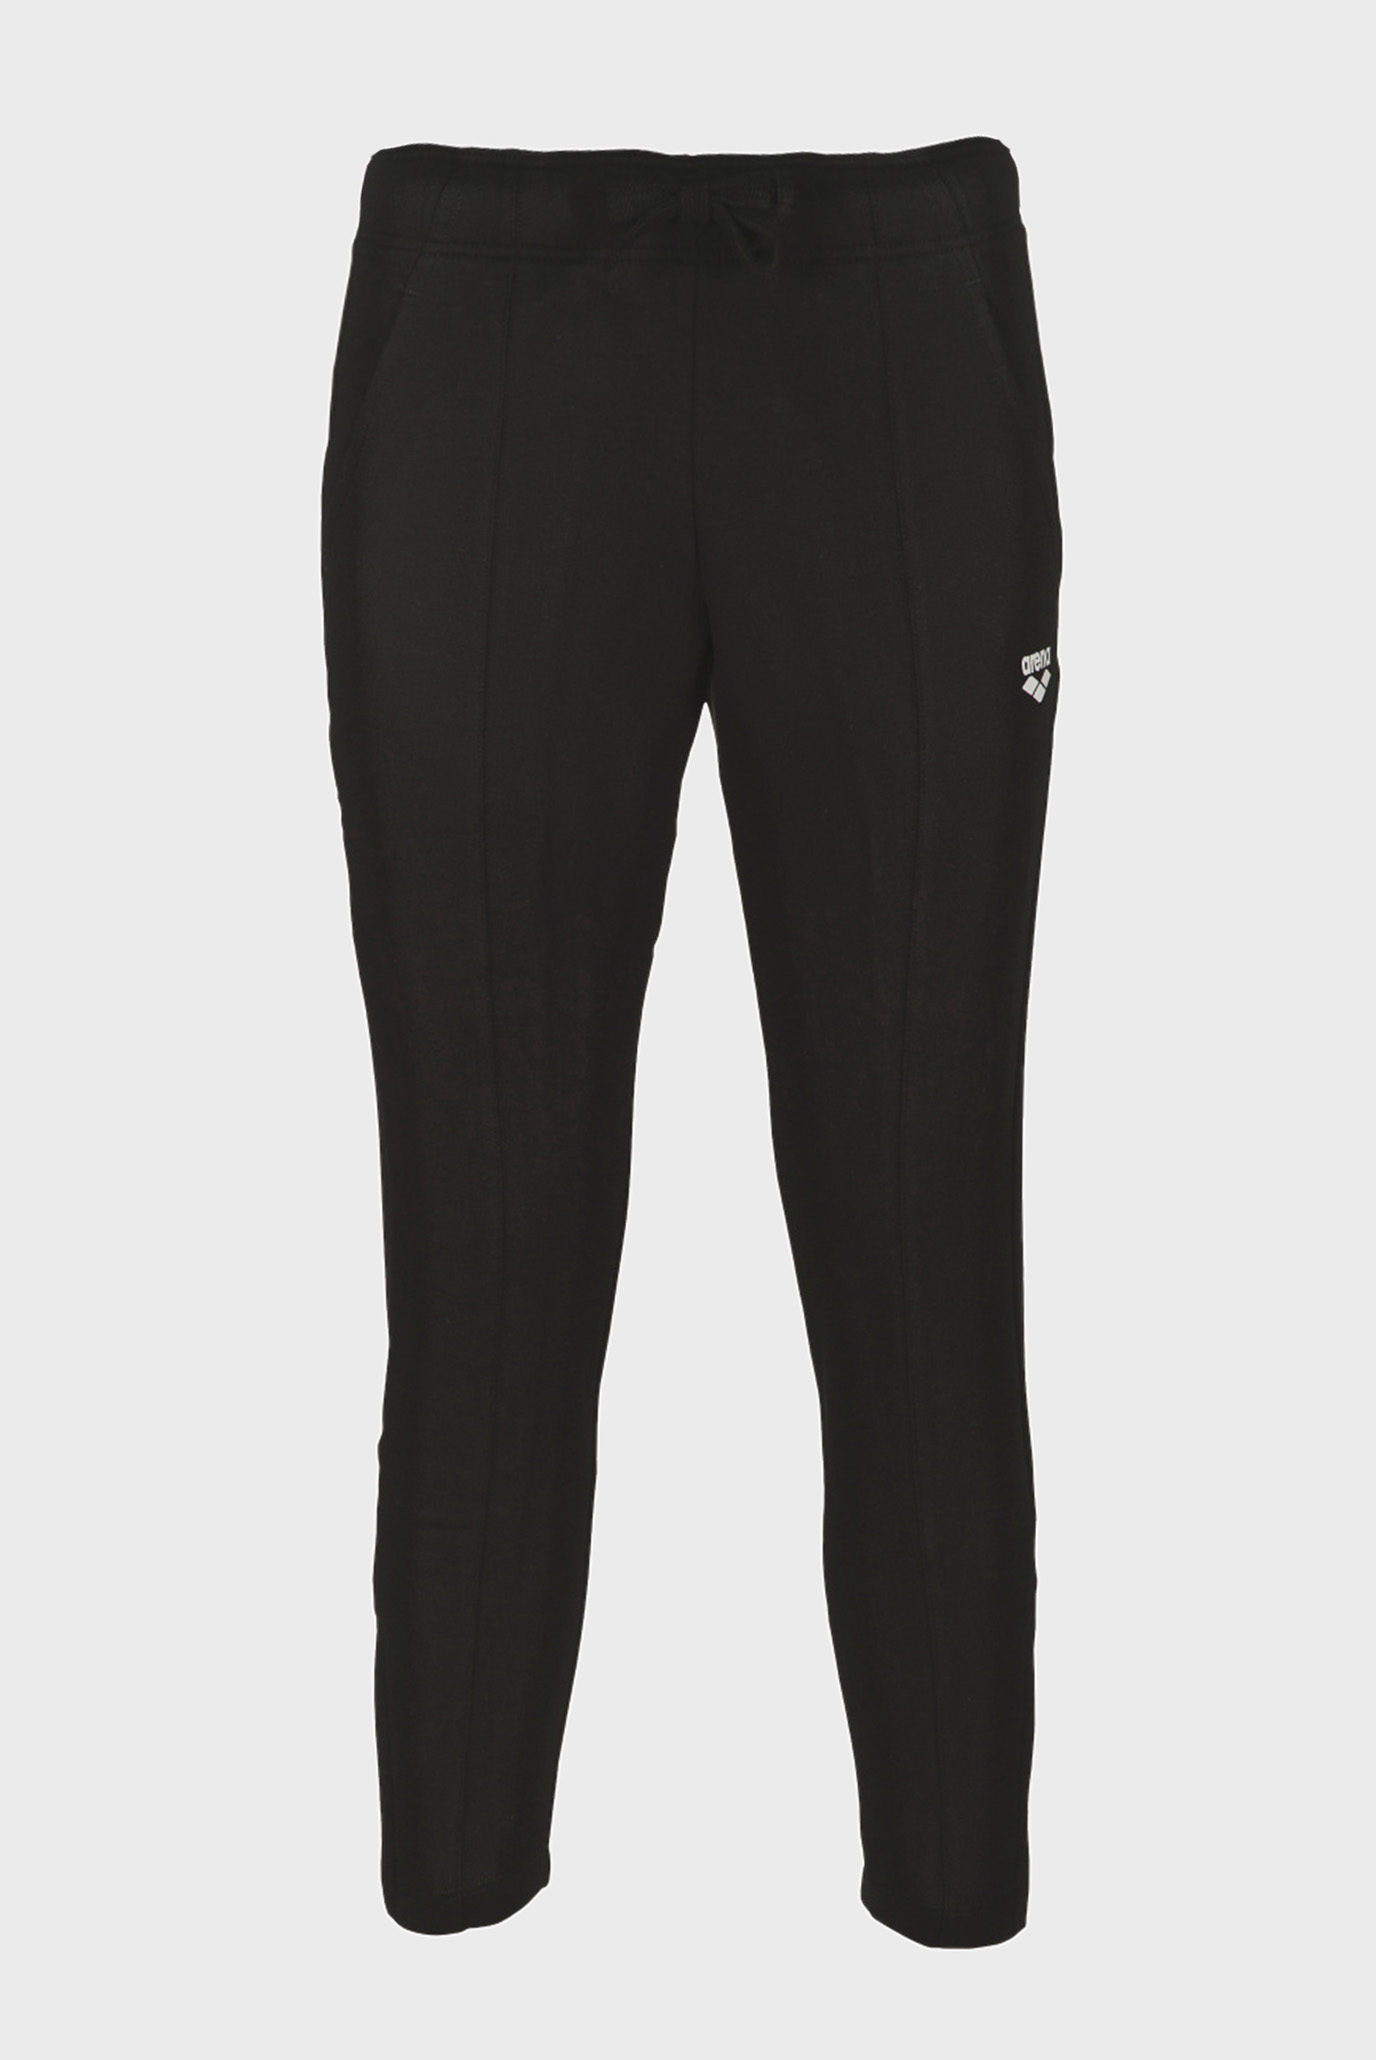 Жіночі чорні спортивні штани W GYM 7/8 PANT 1